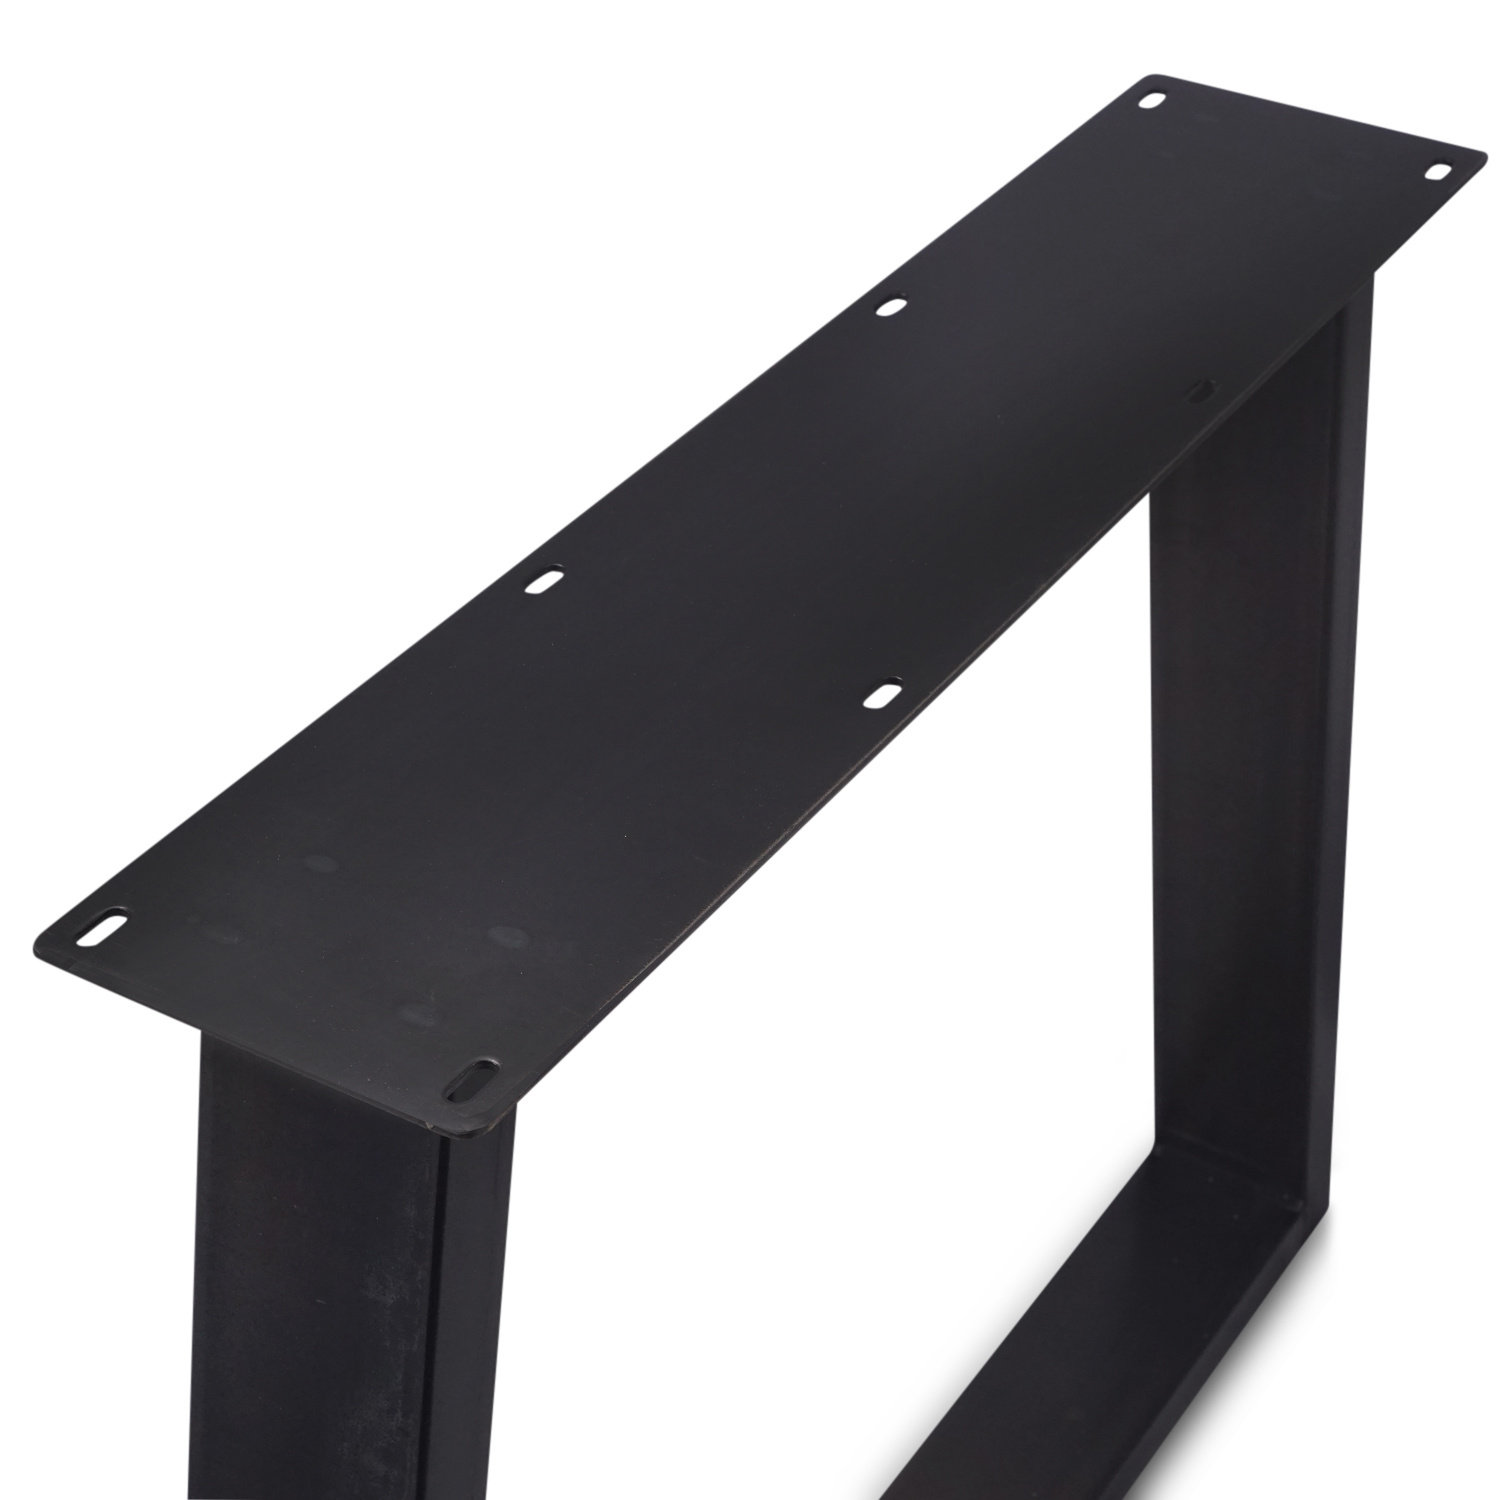  Tischbeine Trapez Metall elegant SET (2 Stück) - 10x4 cm - 78-95 cm breit - 72 cm hoch - Trapez-form Tischkufen / Tischgestell beschichtet - Weiß